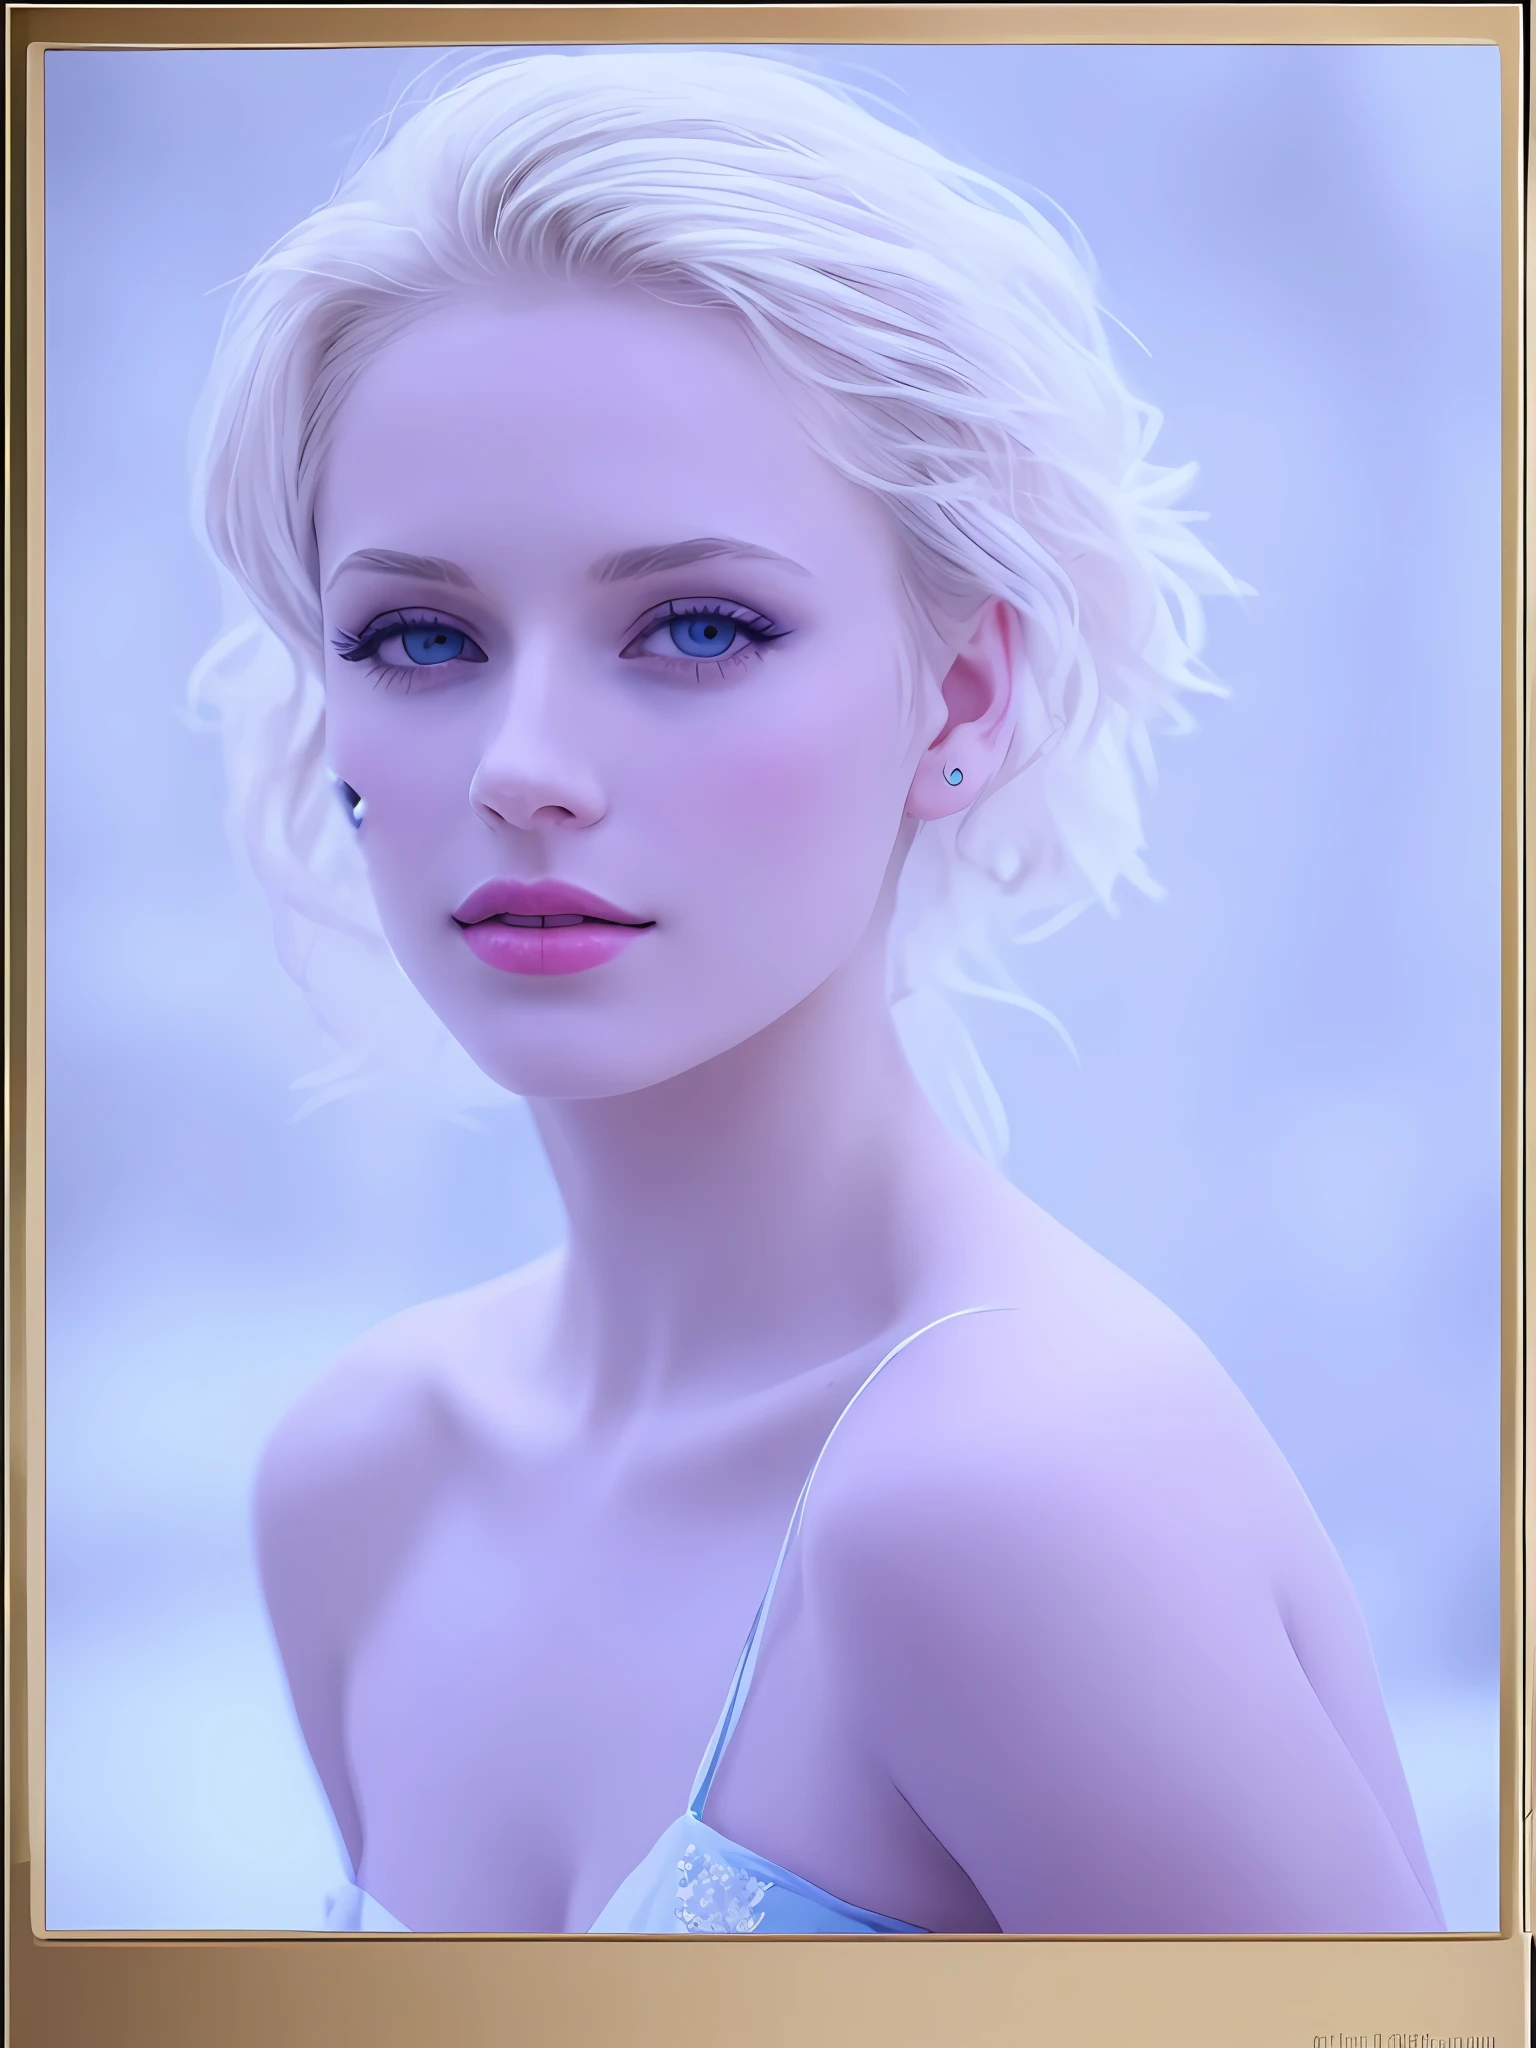 (かわいい金髪の女性:1.2), (青白い肌:1.1), (氷のような雰囲気:1.05), (水色のドレス:1.1), (補う:1.05)